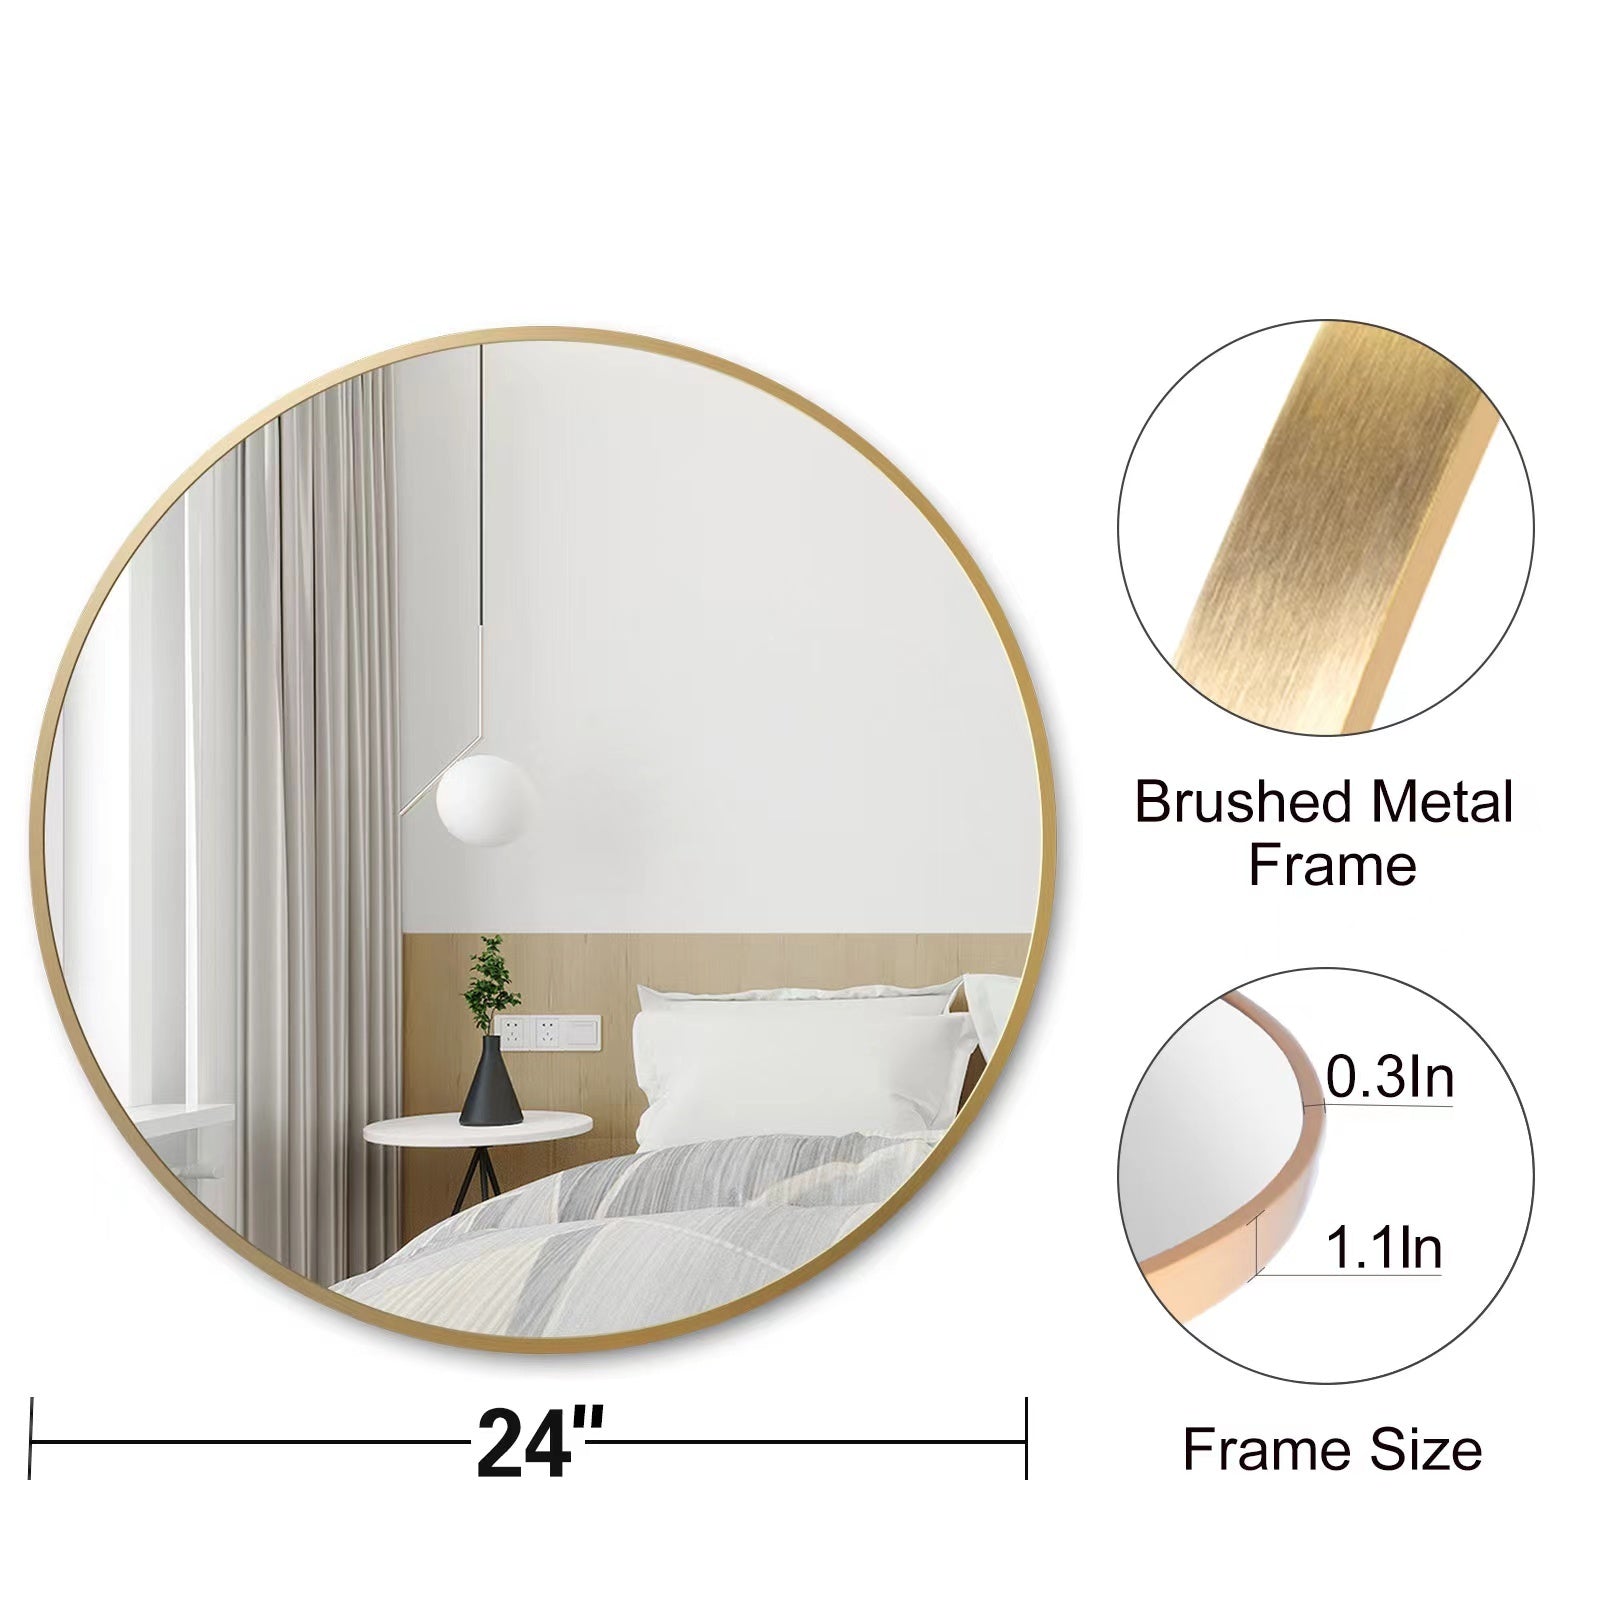 Gold 24 Inch Metal Round Bathroom Mirror gold-classic-mdf-aluminium alloy